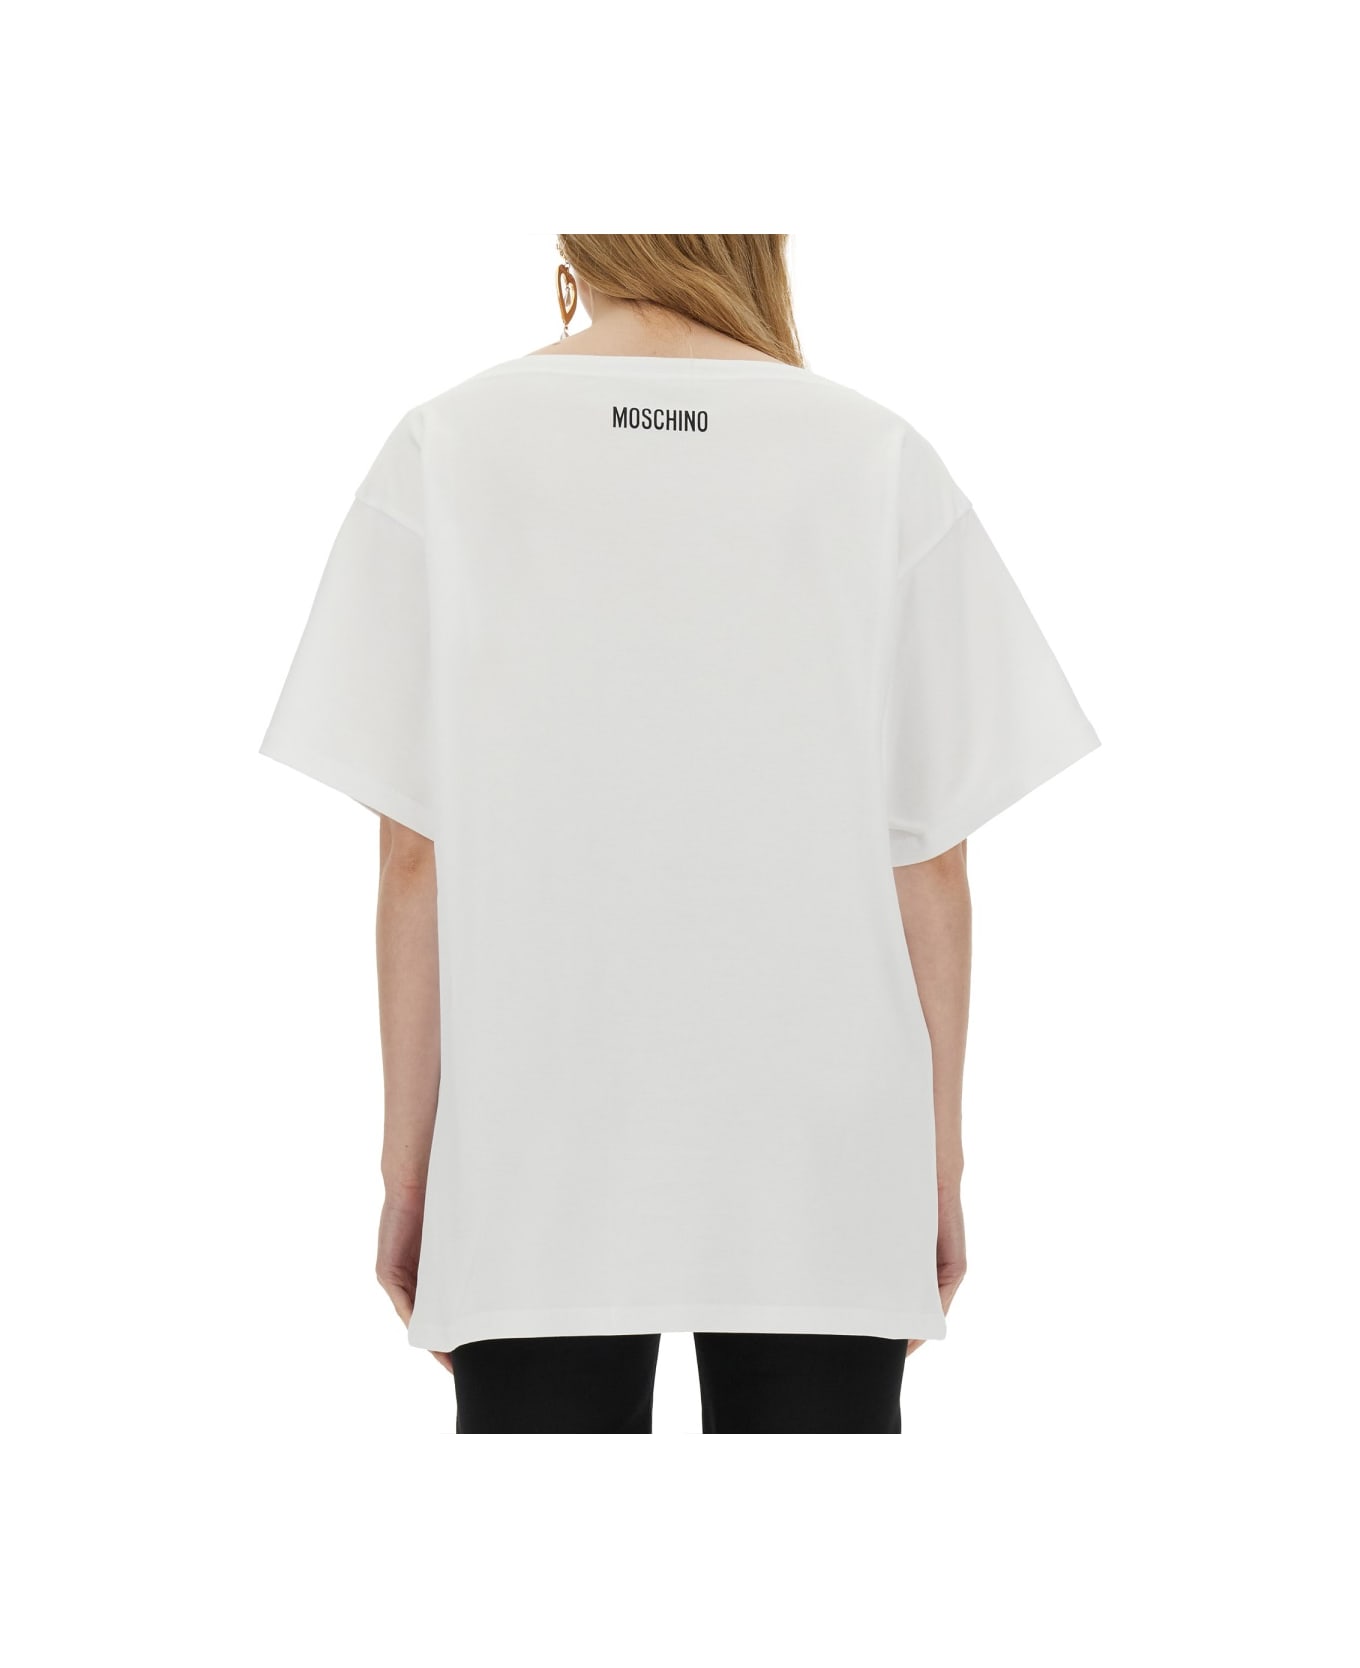 Moschino Interlock T-shirt - WHITE Tシャツ